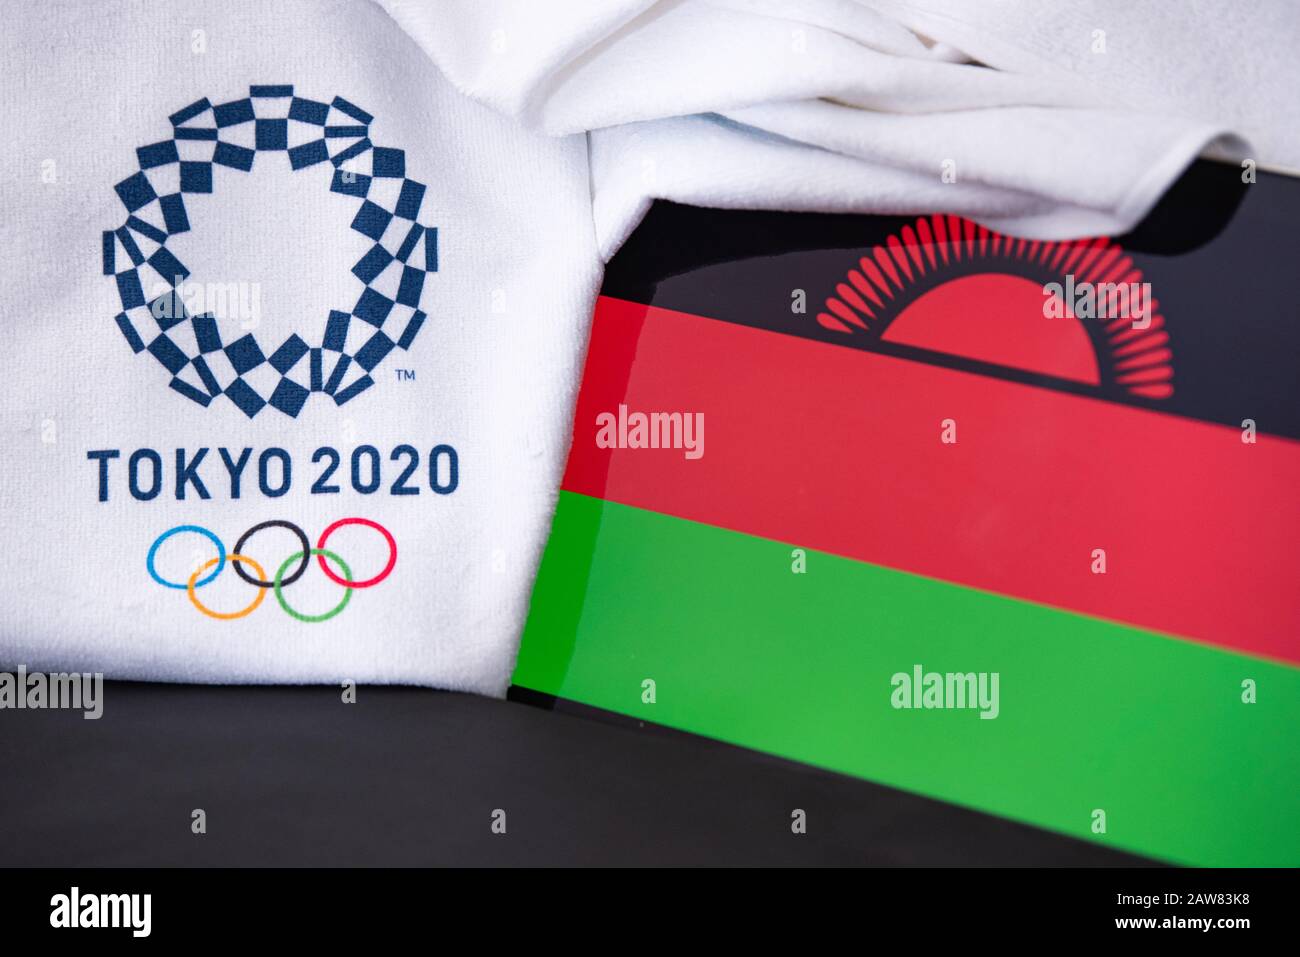 TOKIO, JAPAN, FEBRUAR. 8. 2020: Malawi beim olympischen Sommerspiel in Tokio 2020, Nationalflaggen, schwarzer Hintergrund Stockfoto